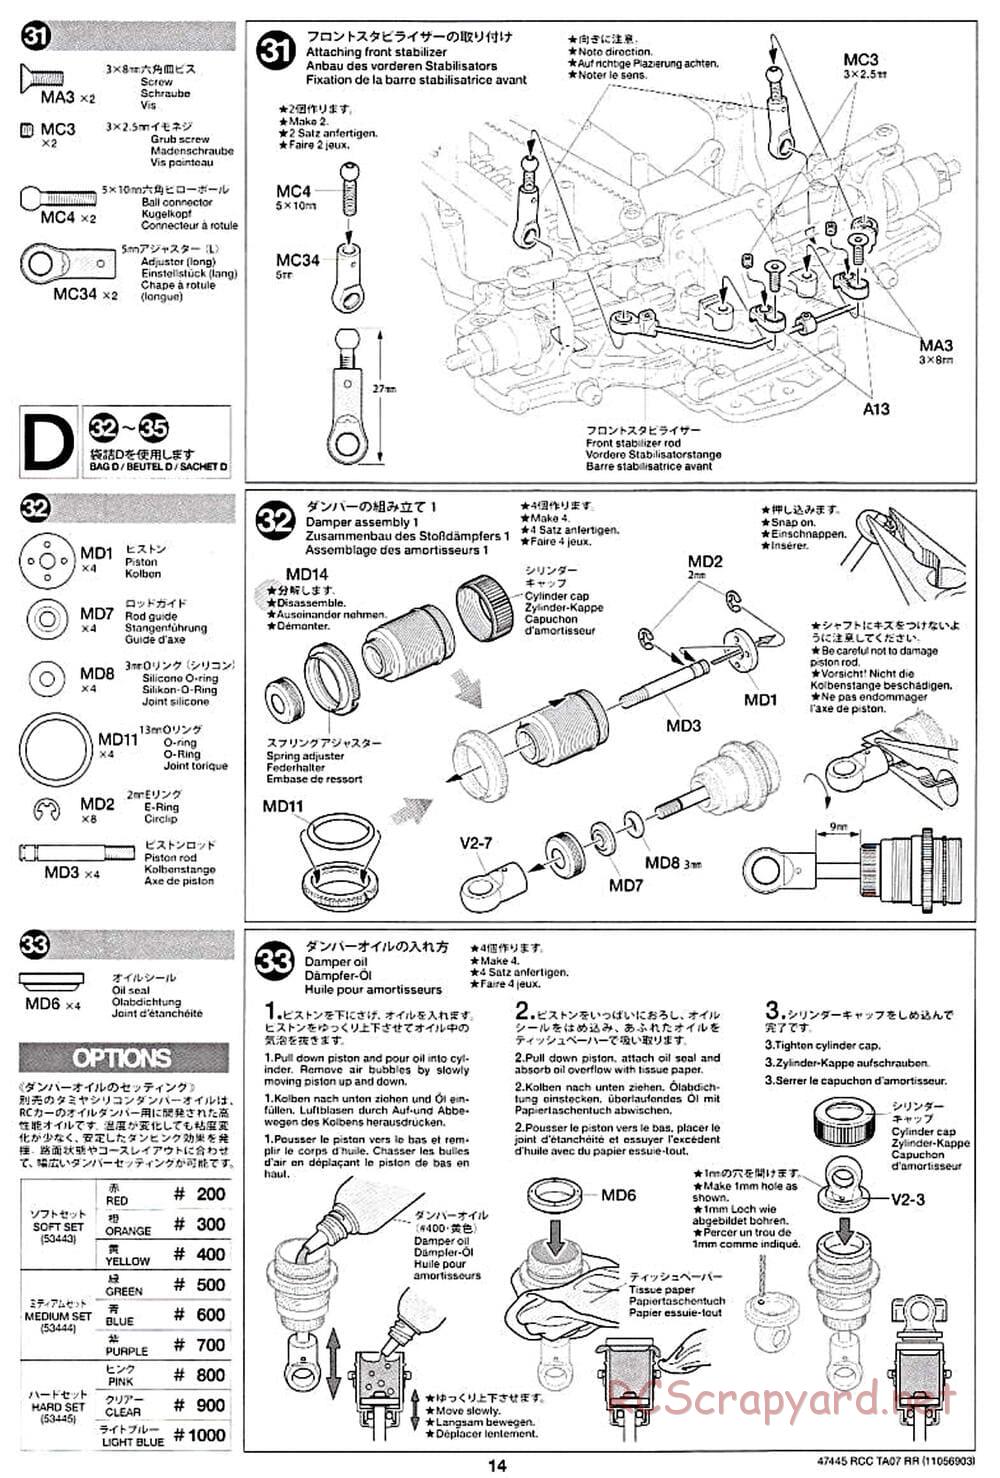 Tamiya - TA07 RR Chassis - Manual - Page 14